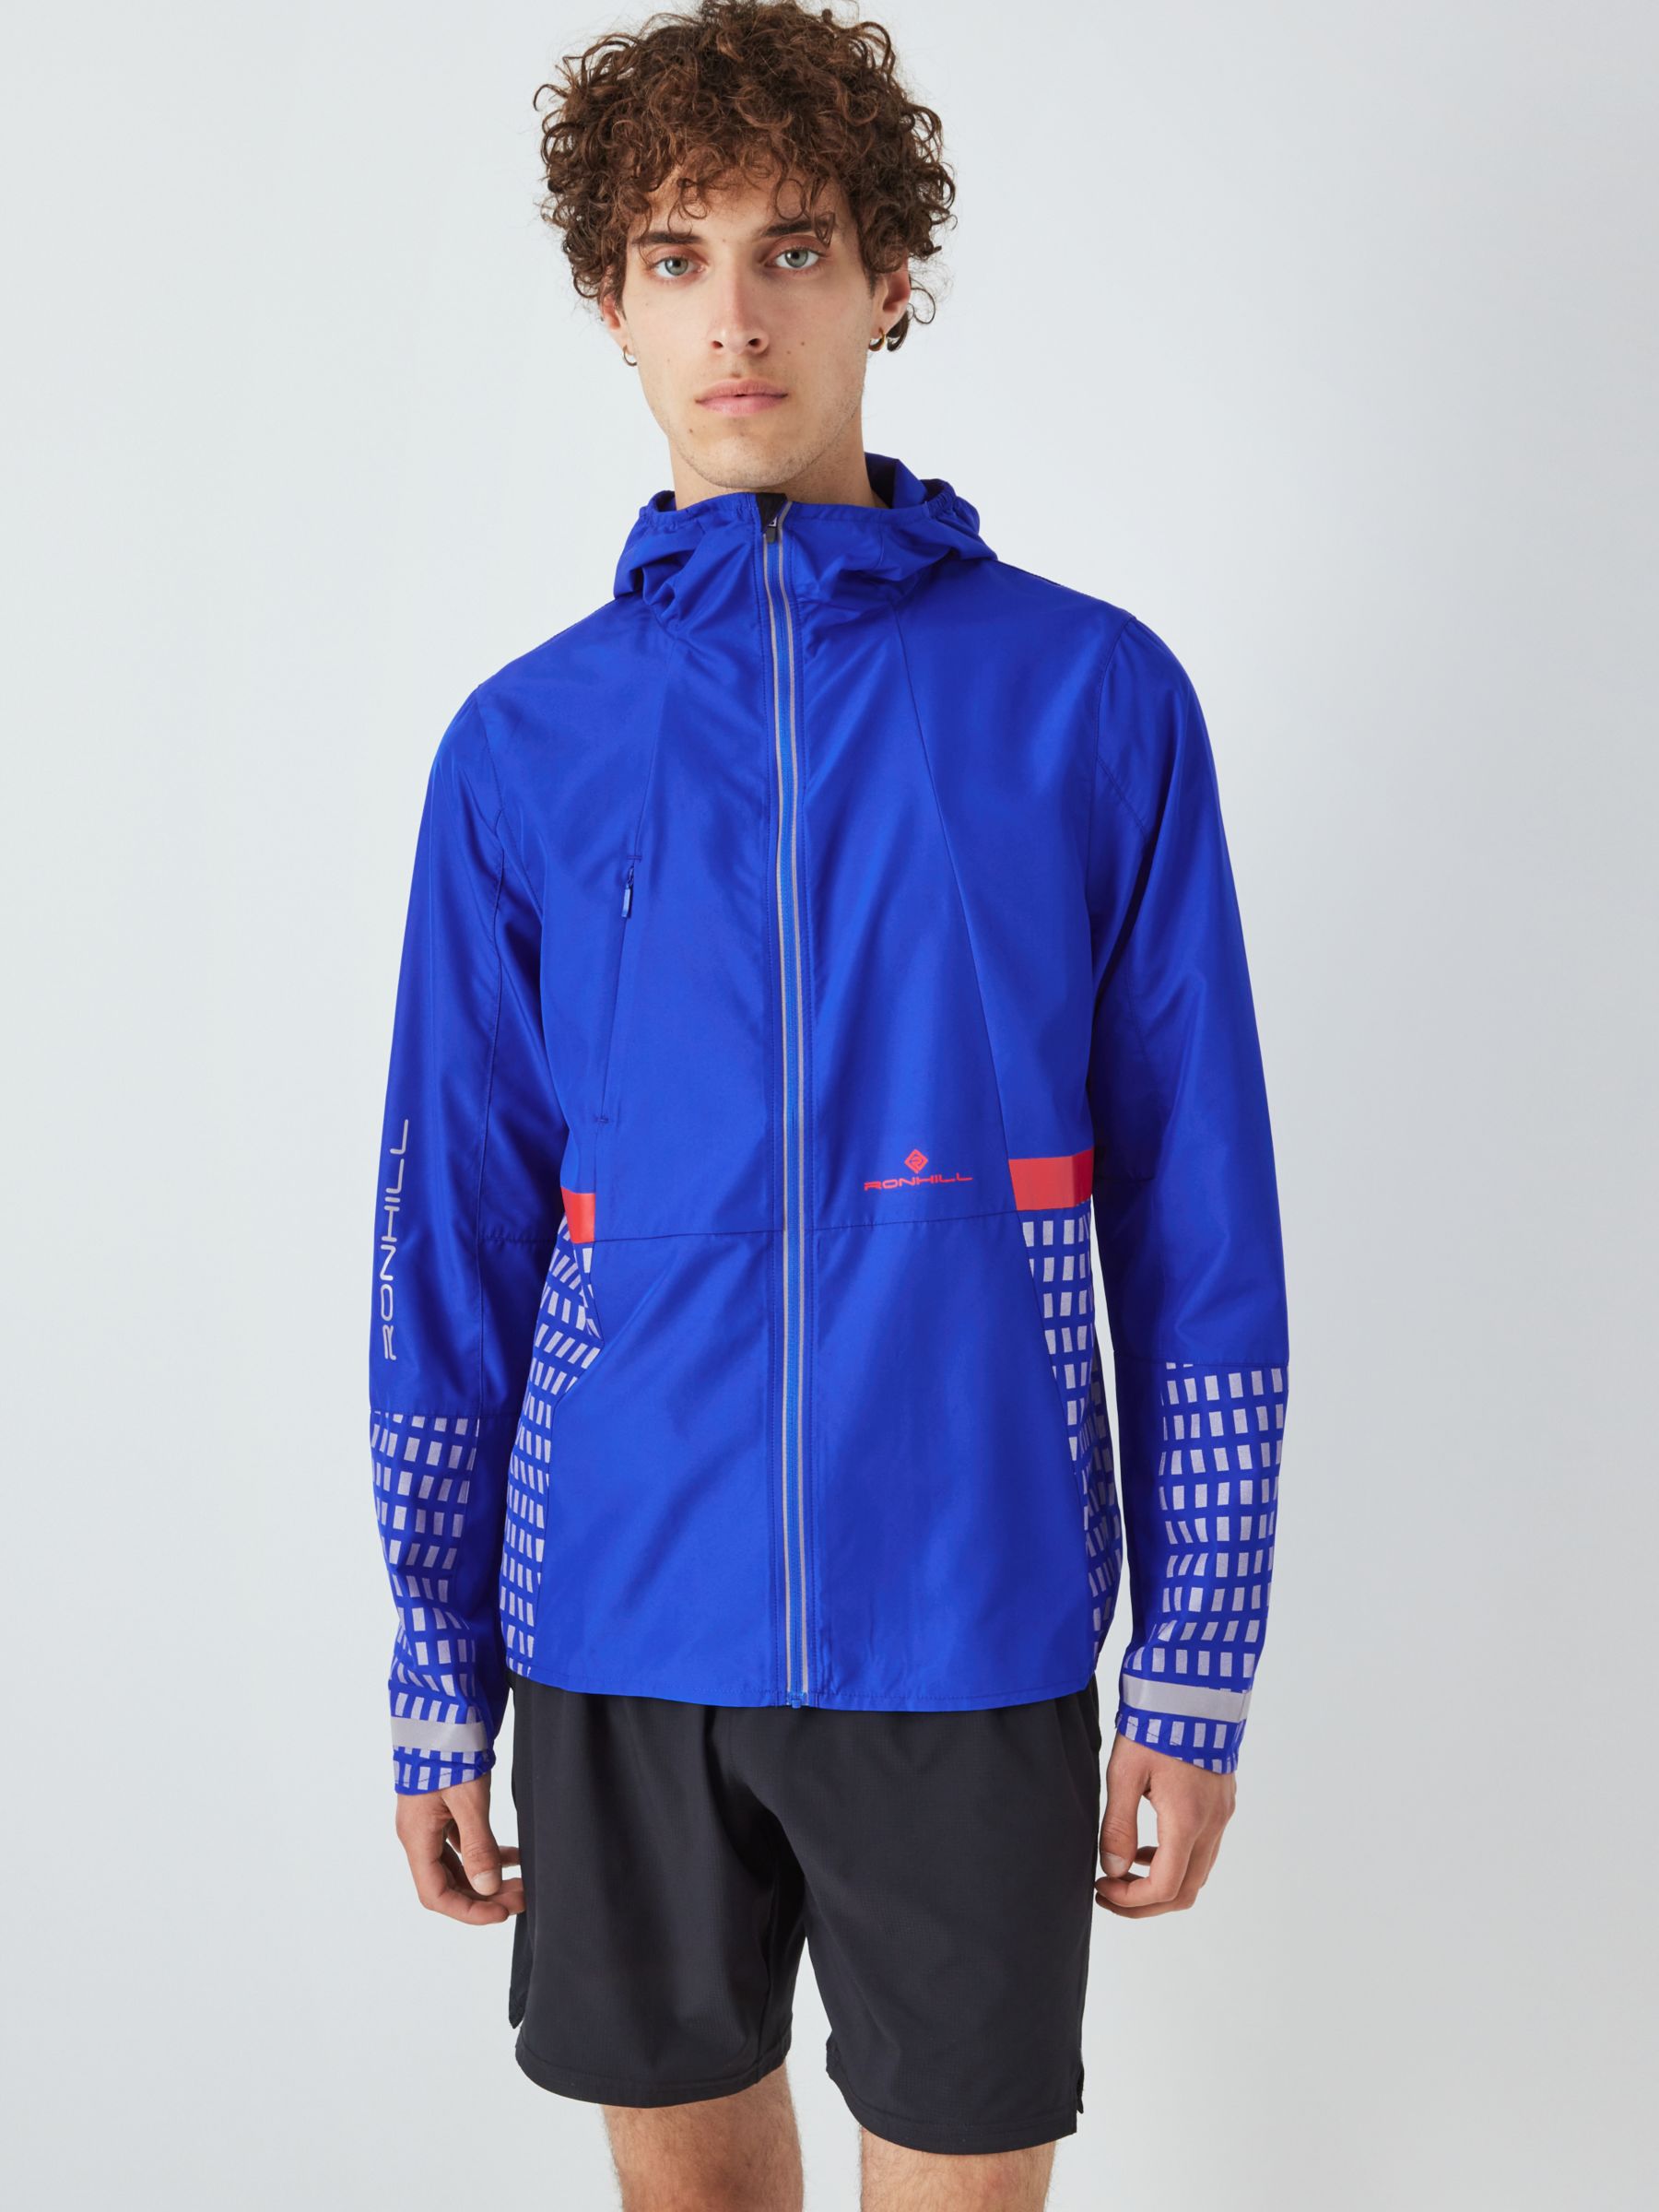 Ronhill Men's Reflective Running Jacket, Cobalt, XL